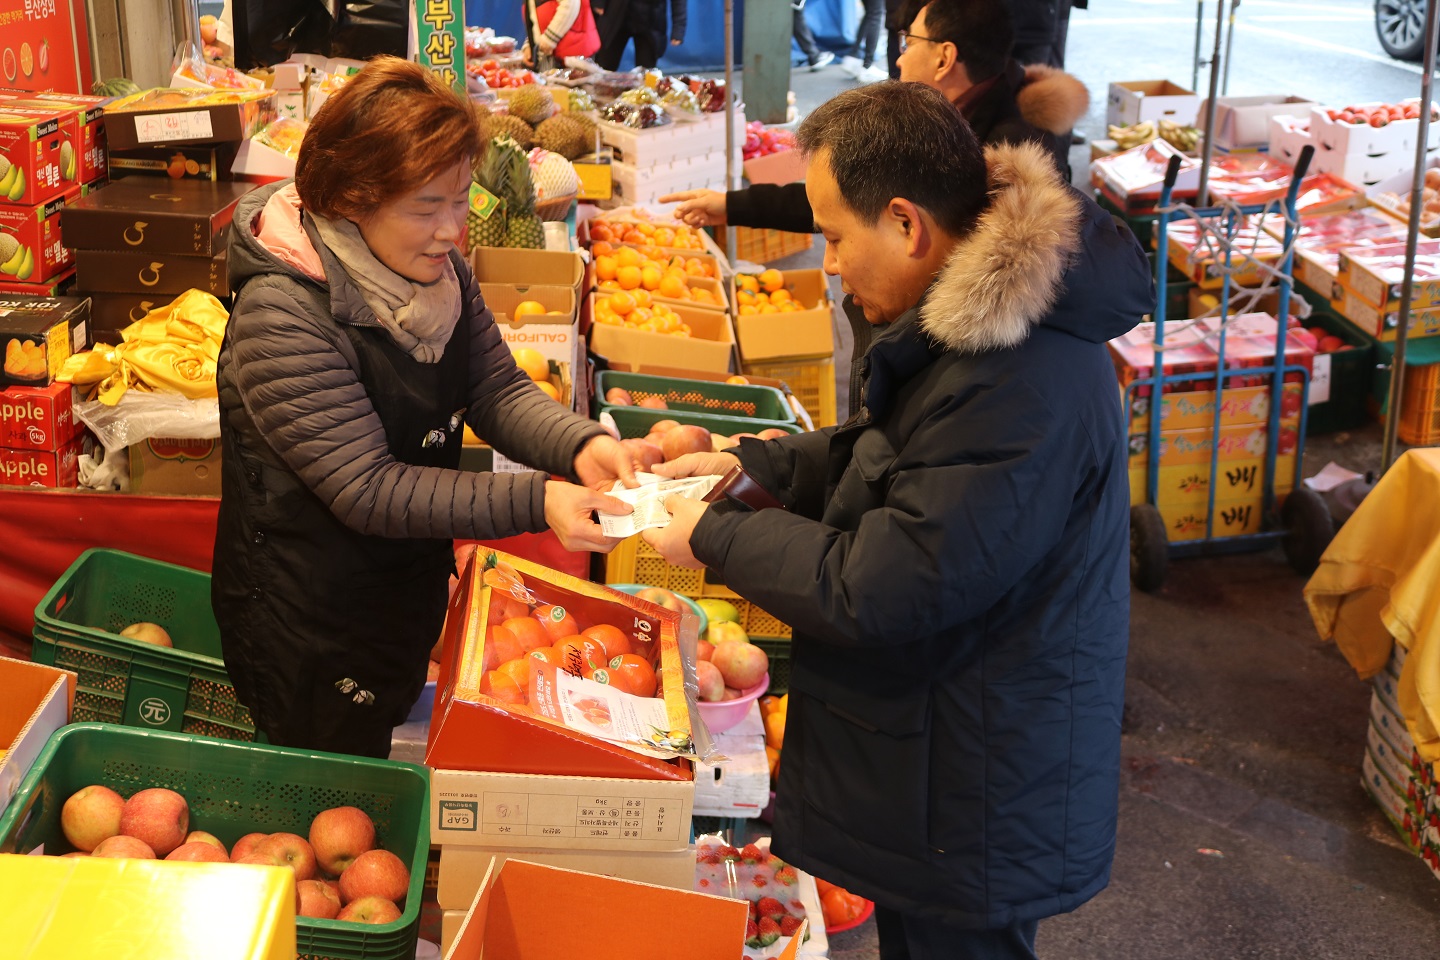 창업진흥원, 대전 중앙시장에서 새해 설맞이 사진 세번째 - 김광현 원장님이 시장 상인에게 과일을 구매한 후 온누리 상품권으로 결제하는 사진을 촬영하고 있습니다.